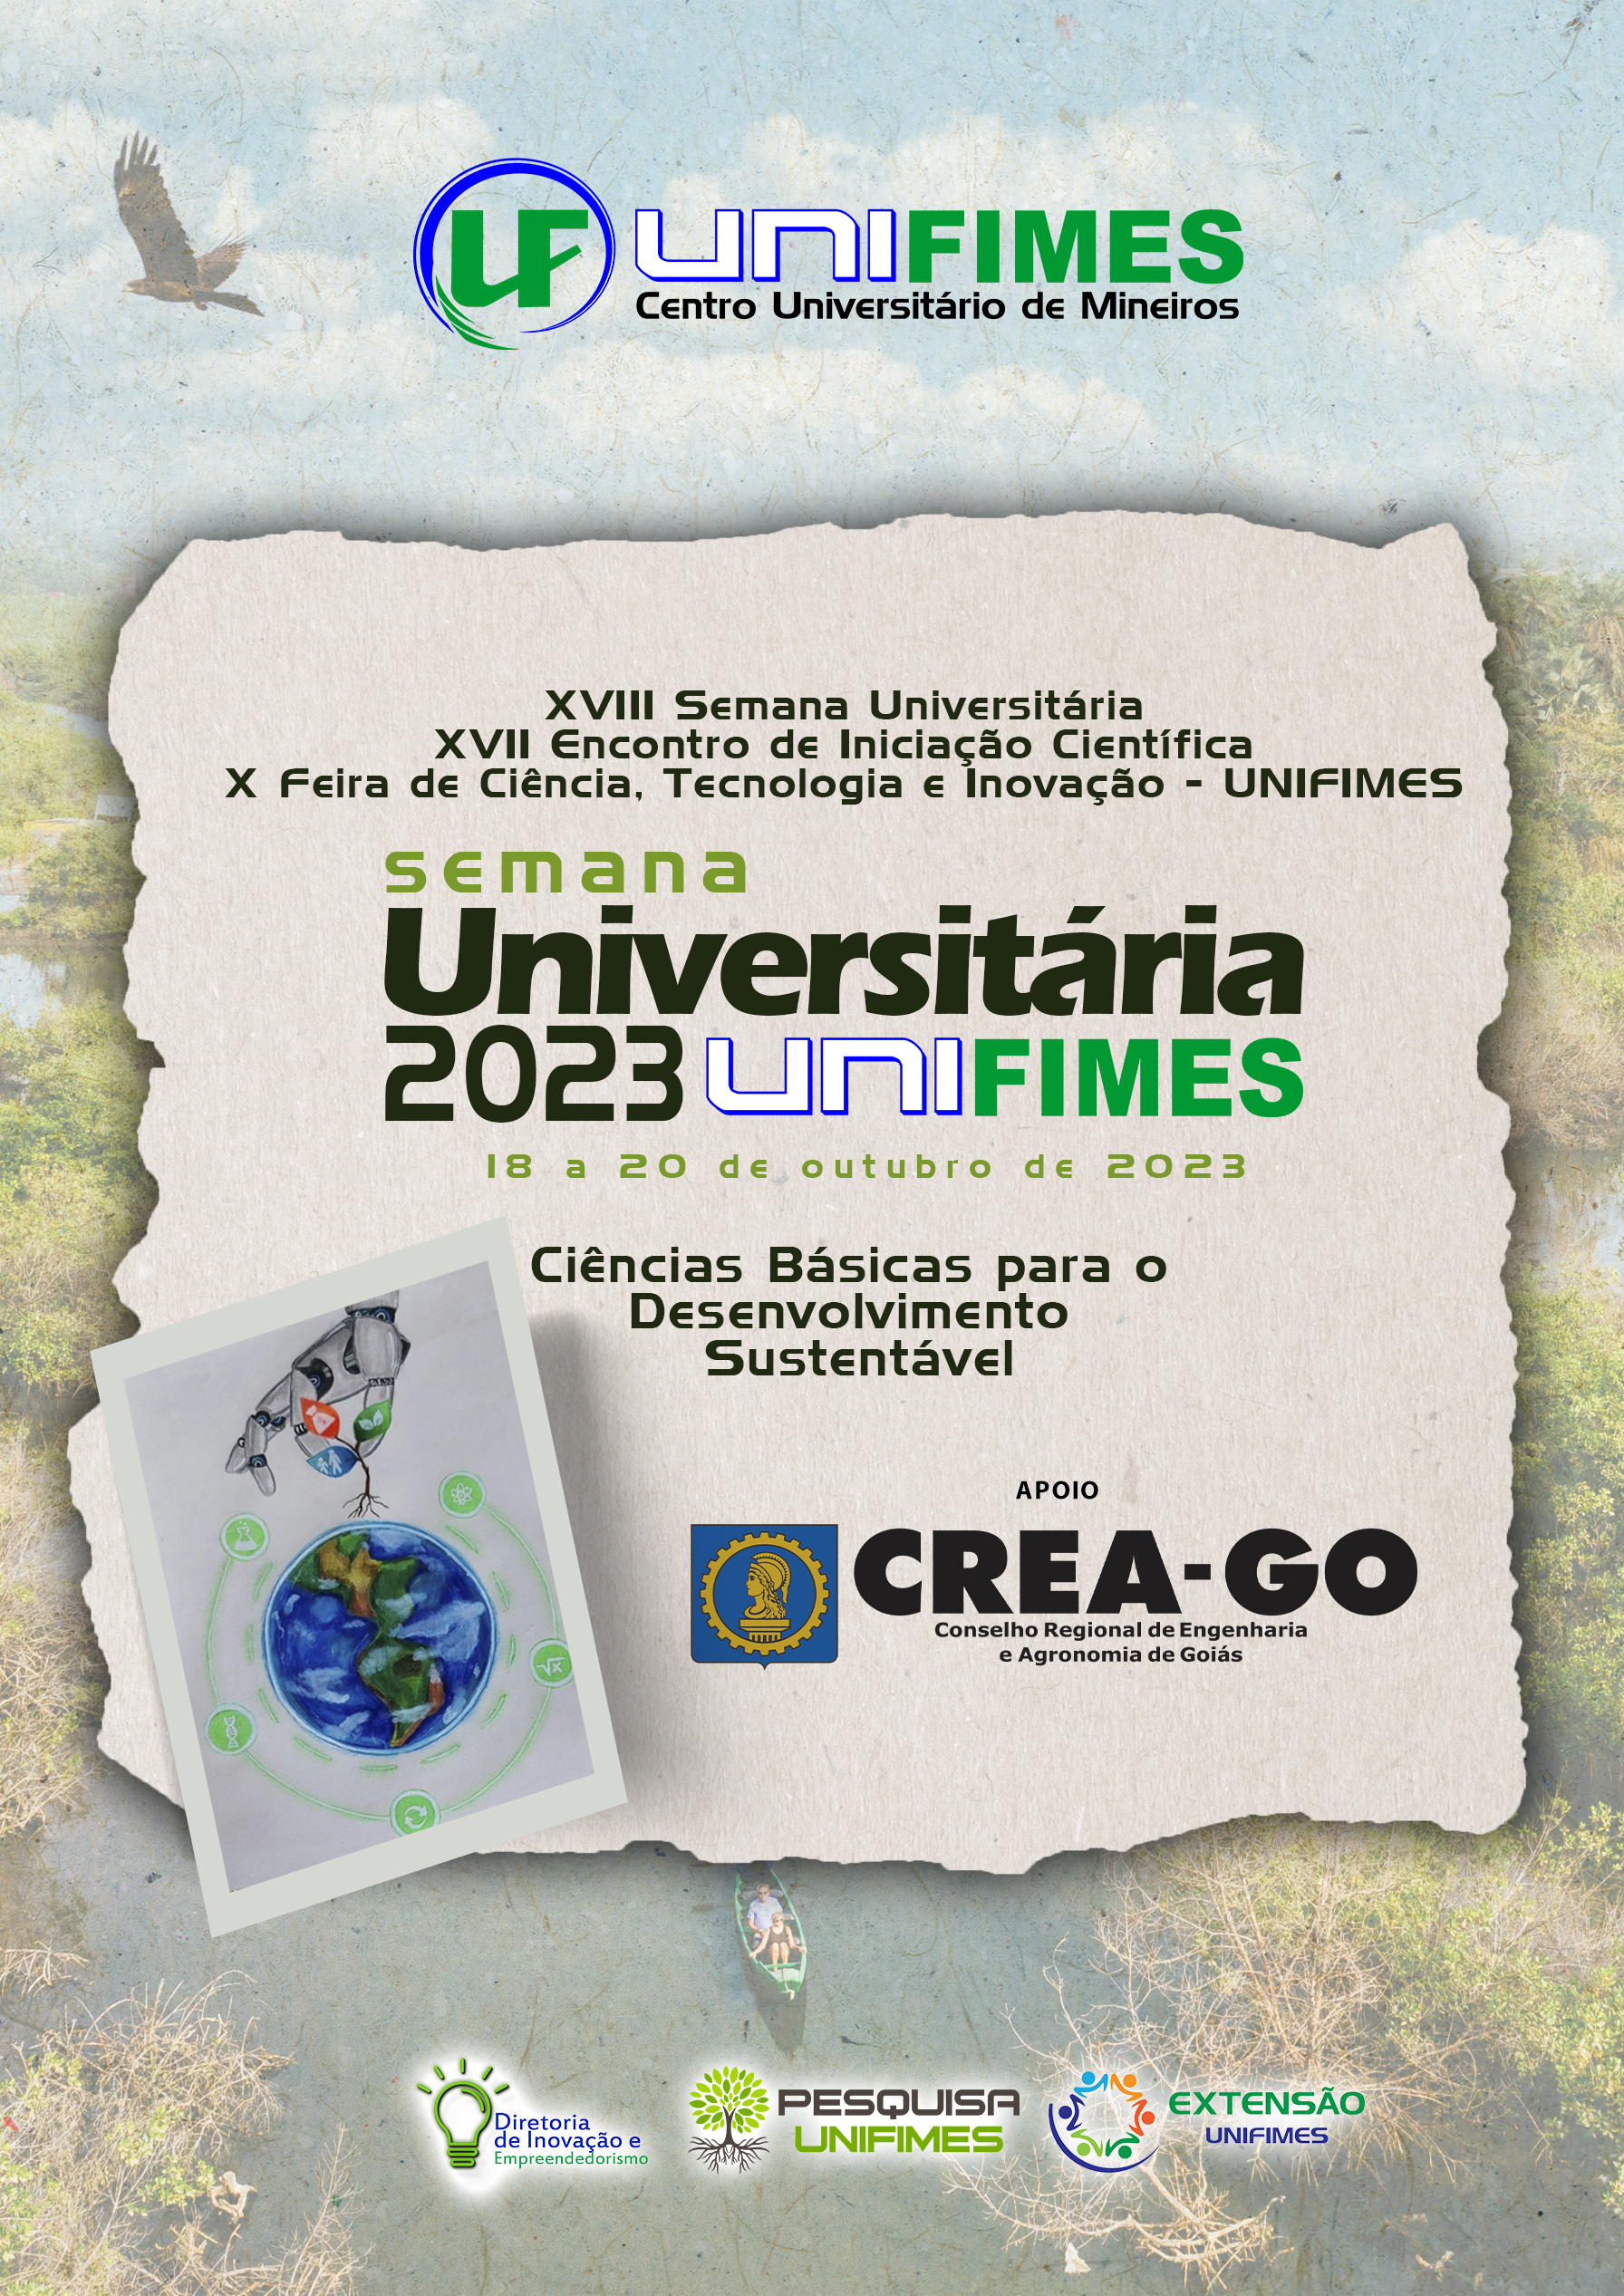 					Afficher Vol. 1 No 1 (2023): XVIII Semana Universitária XVII Encontro de Iniciação Científica X Feira de Ciência, Tecnologia e Inovação - UNIFIMES
				